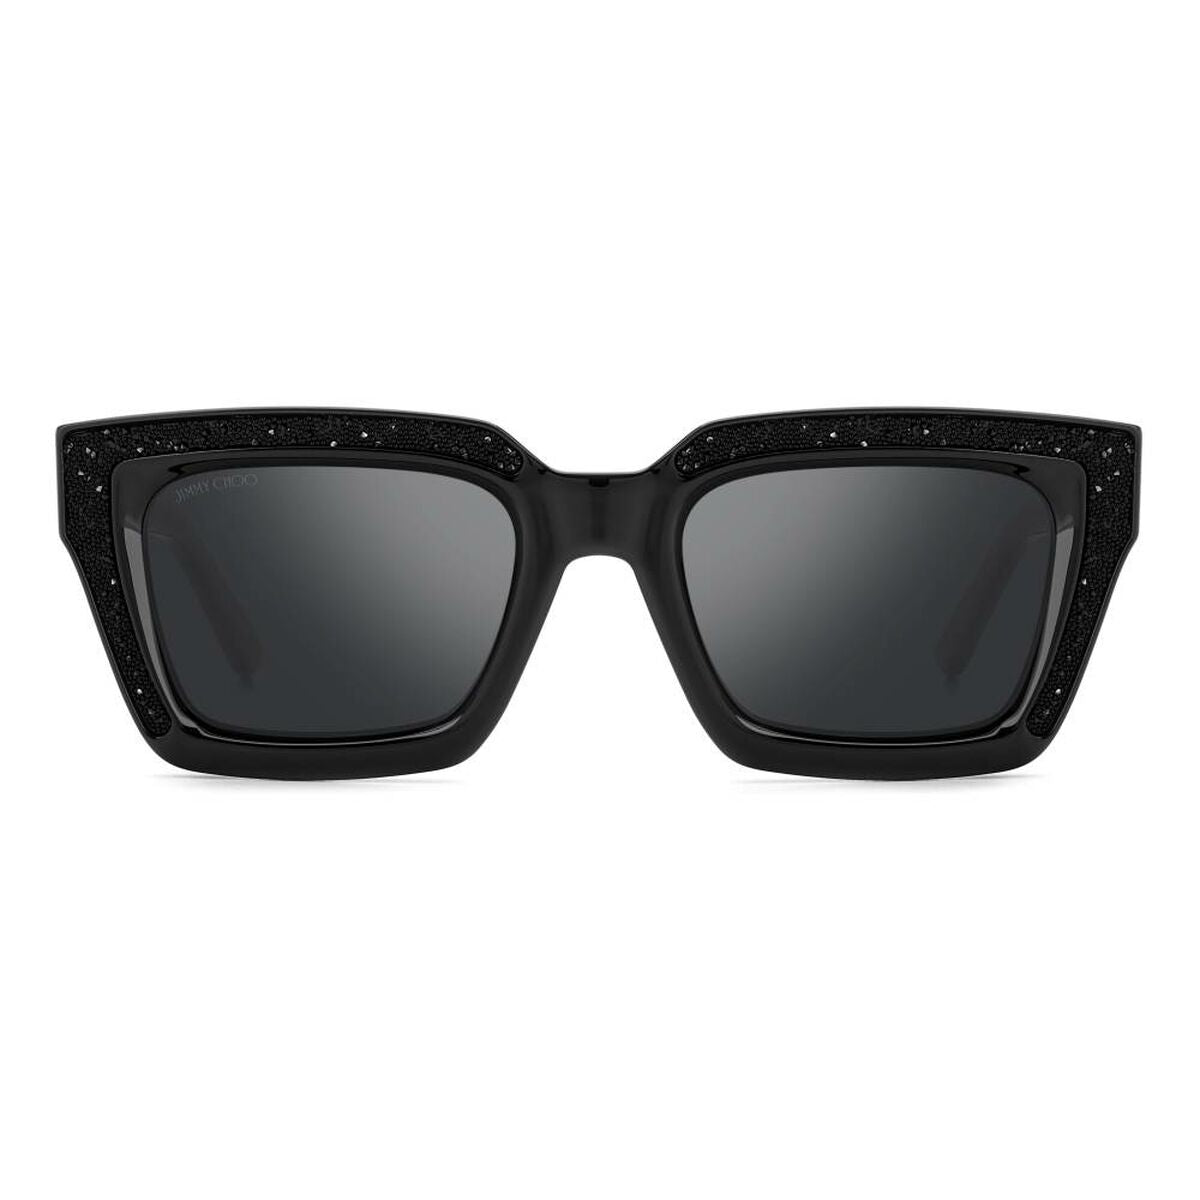 Kaufe Damensonnenbrille Jimmy Choo MEGS-S-807T4 Ø 51 mm bei AWK Flagship um € 157.00